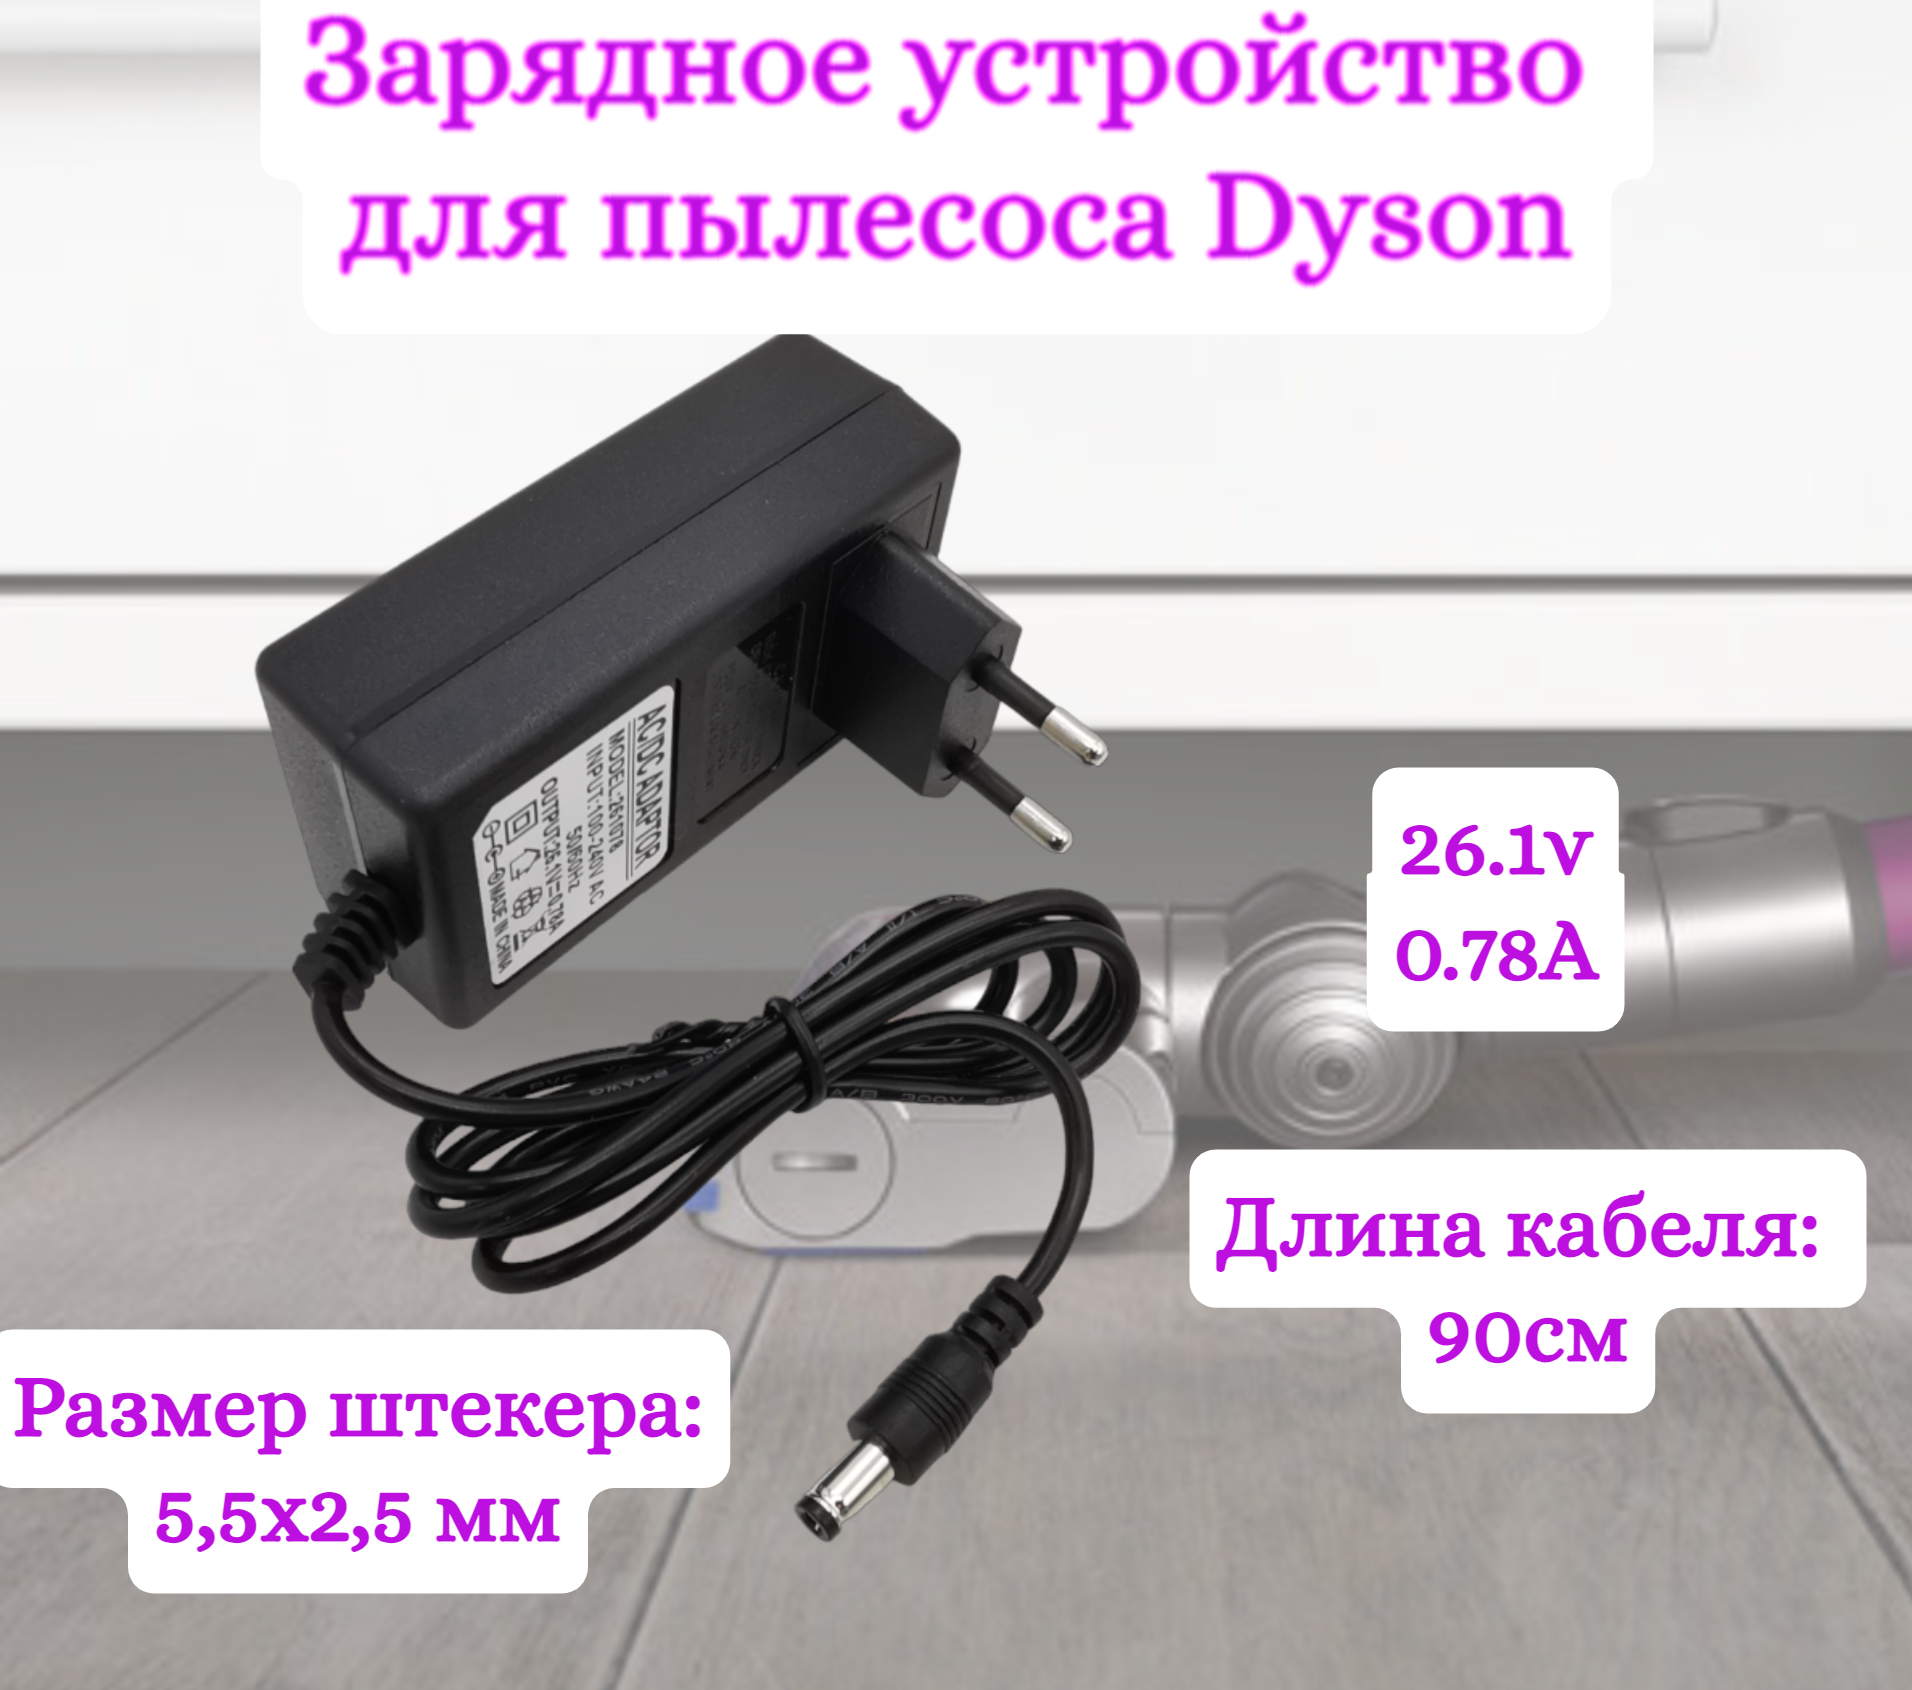 Зарядное устройство для пылесосов Helpico AC-DC 26.1v 0.78A 5.5x2.5mm адаптер для пылесосов ulike s902